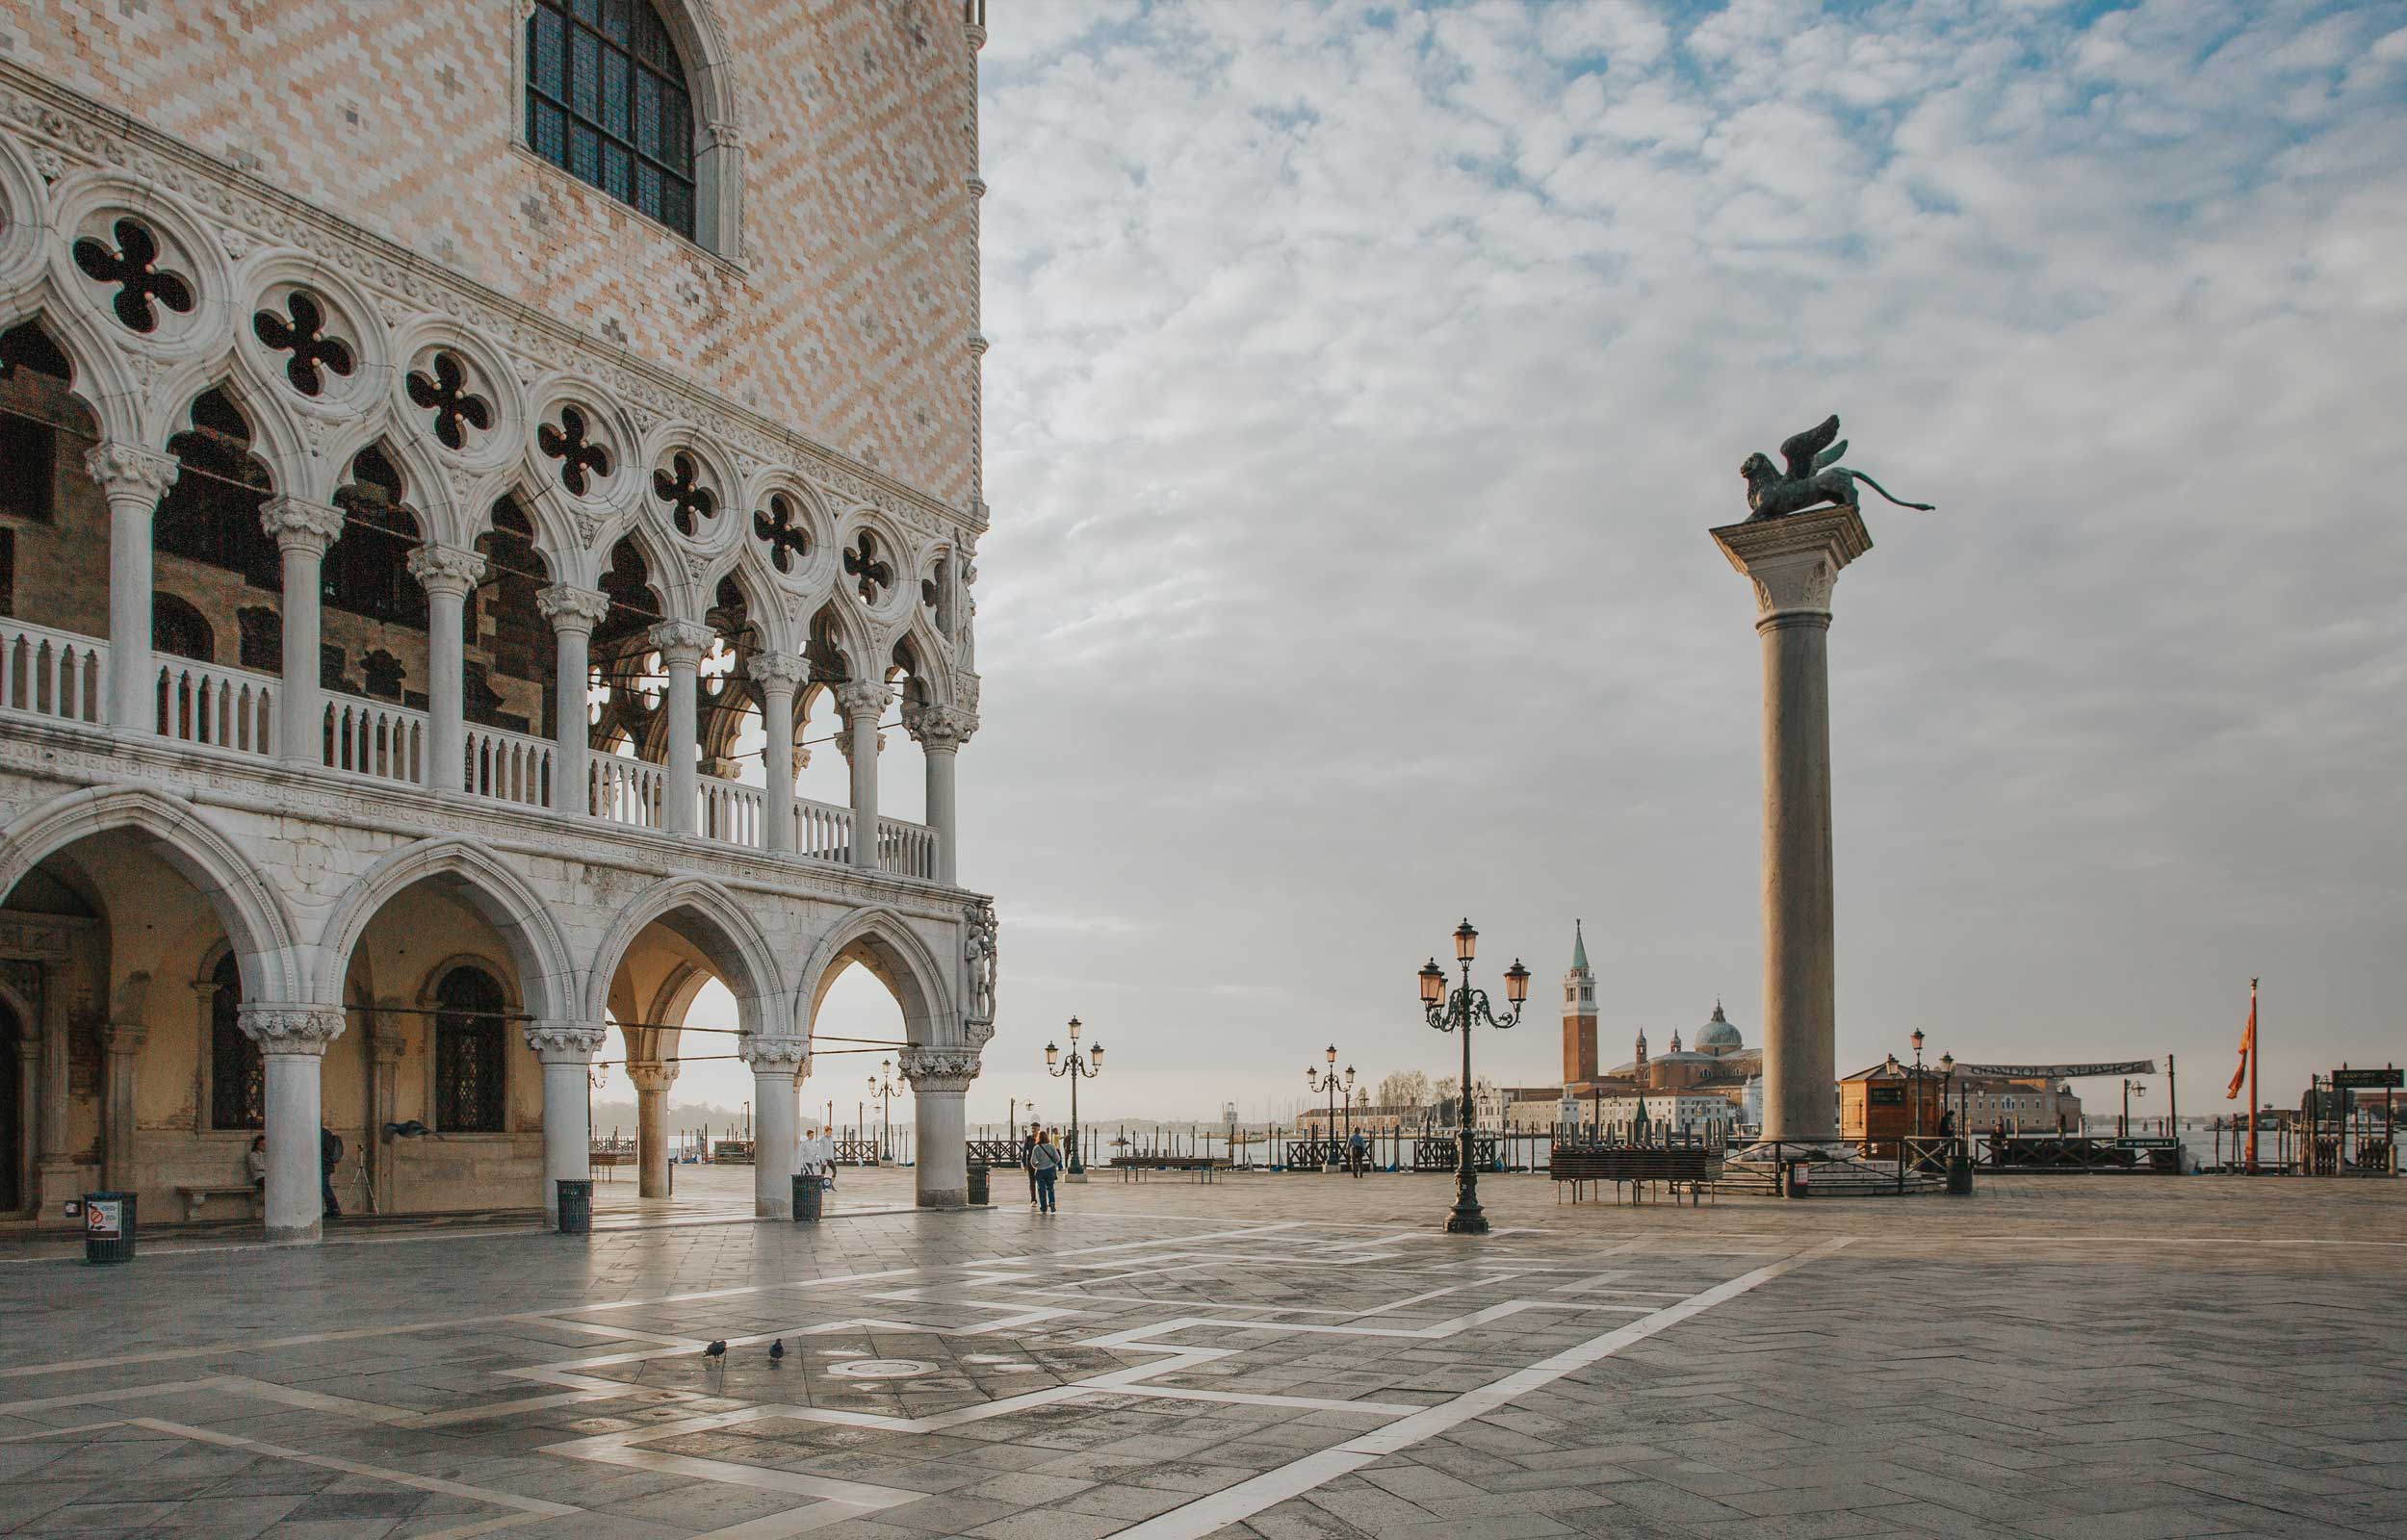 Al momento stai visualizzando L’arte a Venezia, tra palazzi, musei e chiese